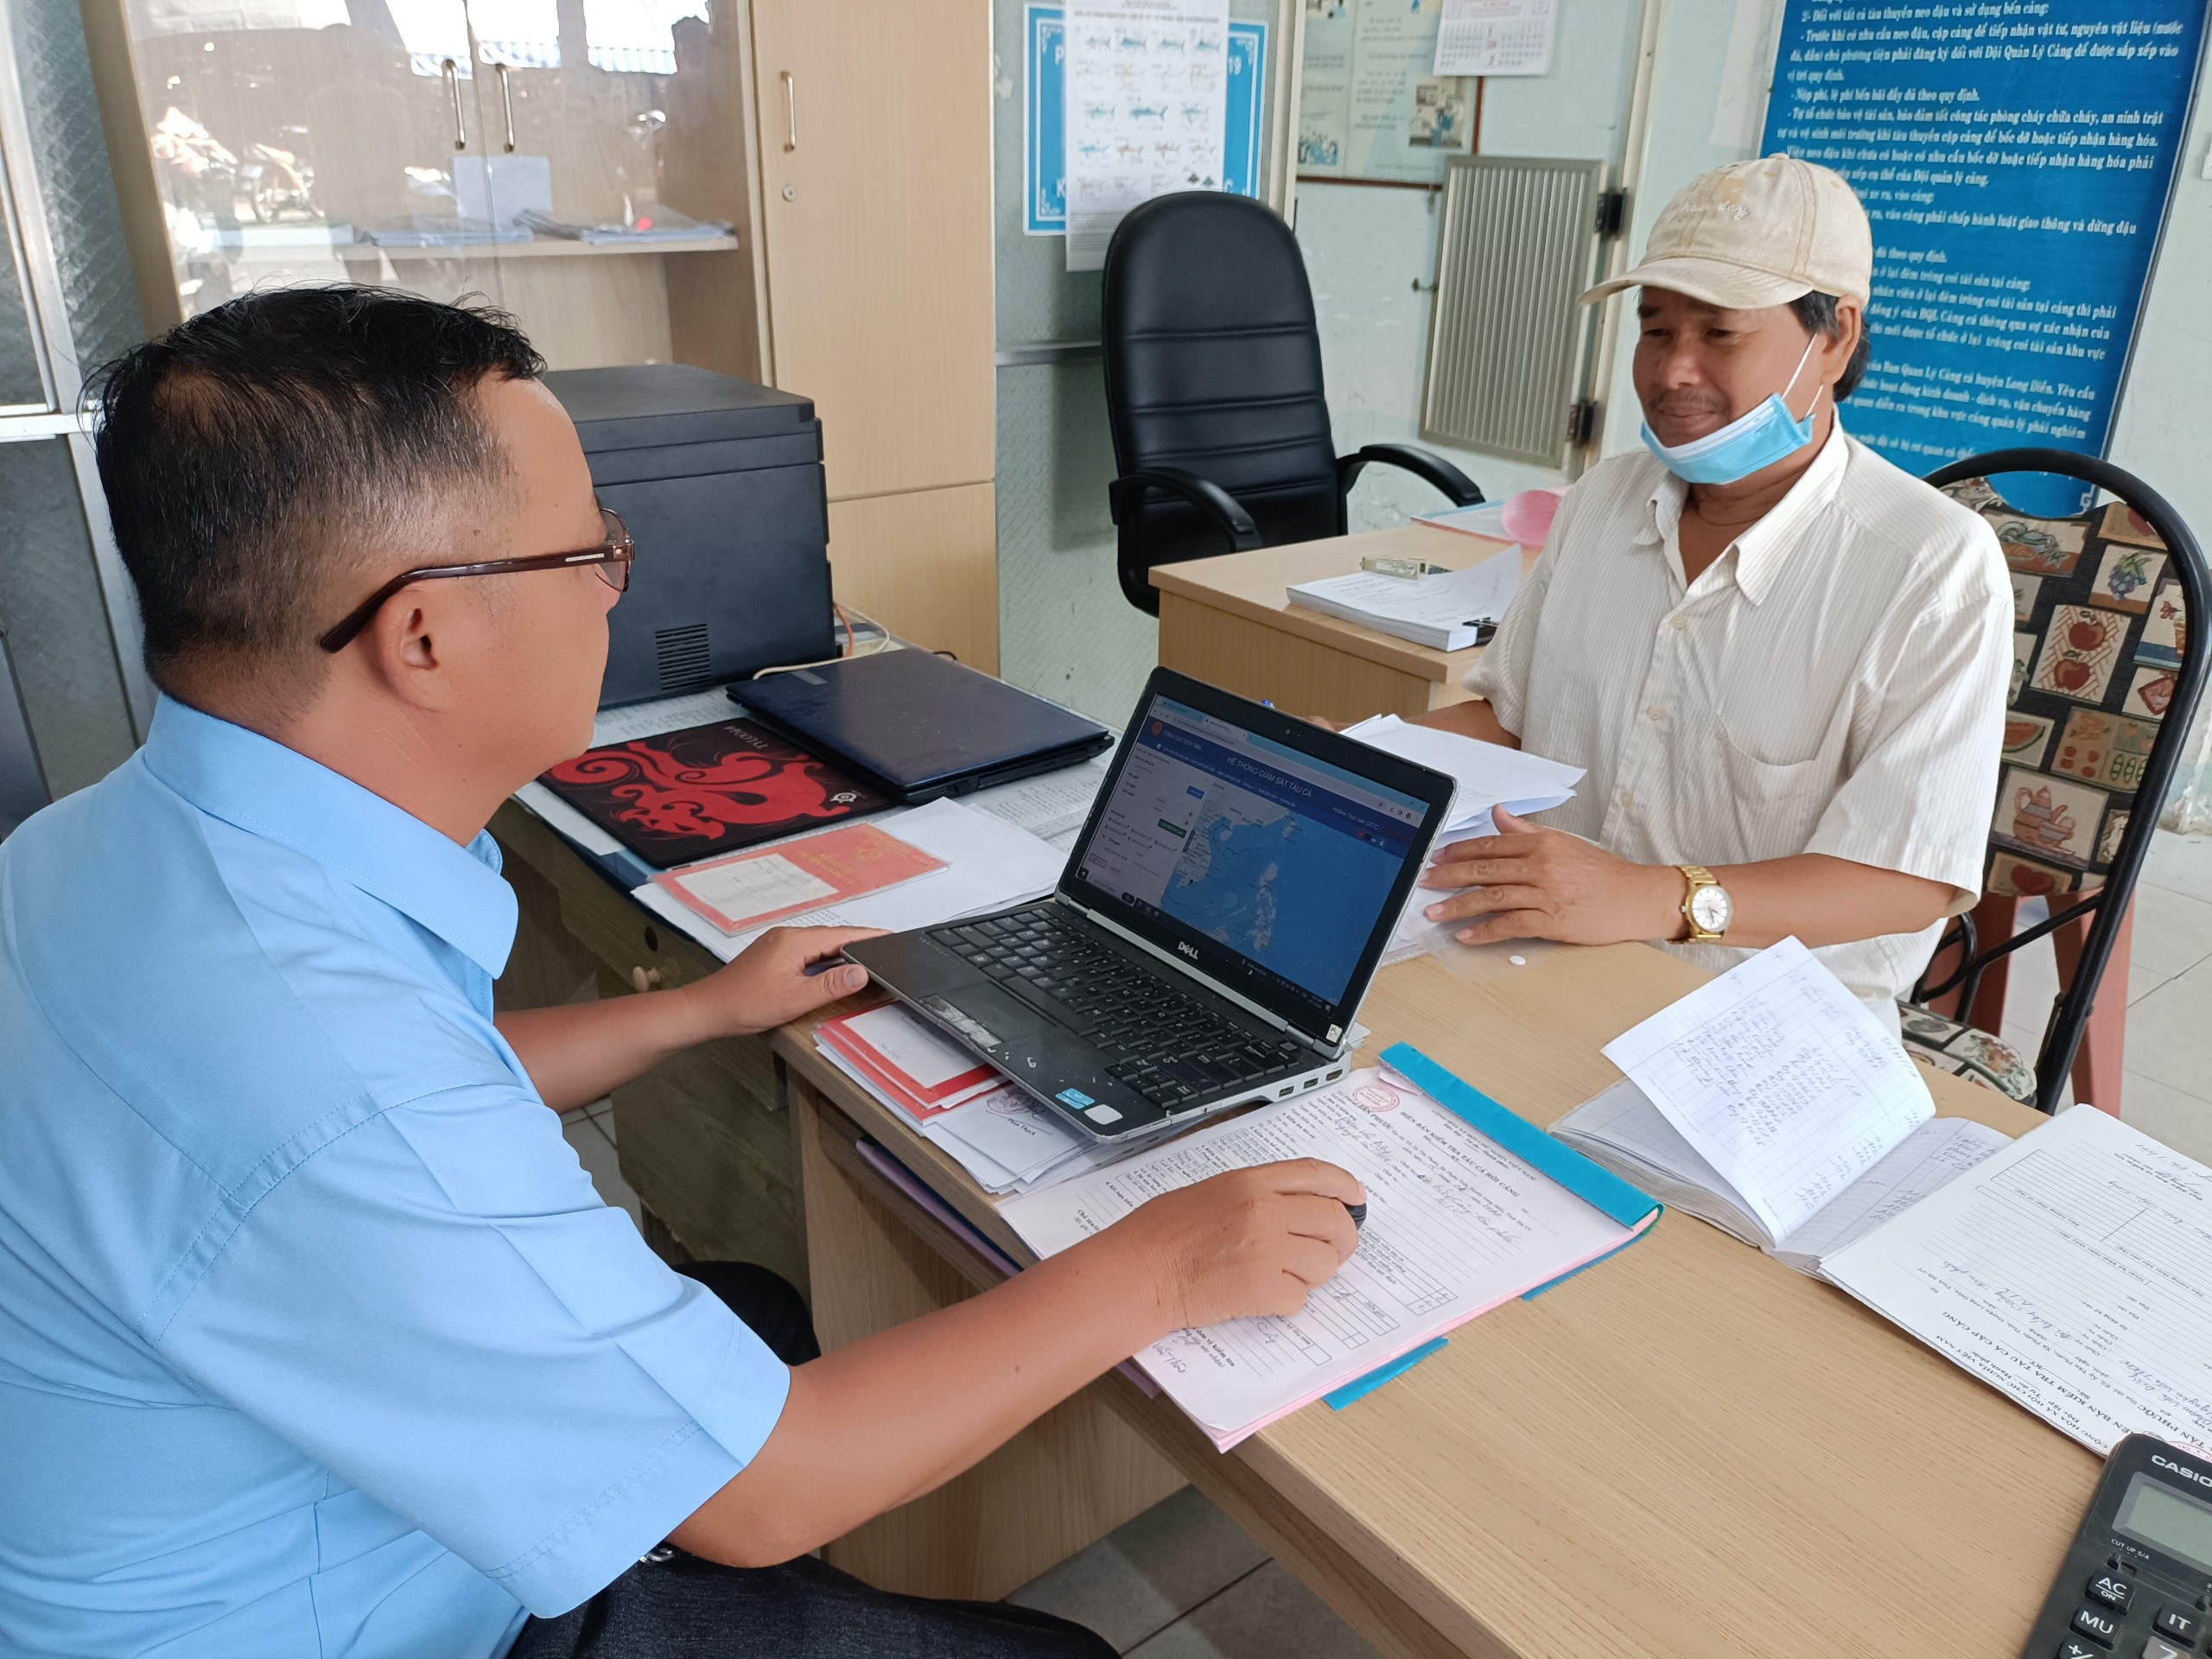 Nhân viên cảng cá Tân Phước (huyện Long Điền) kiếm tra giấy tờ, tọa độ, sản lượng hải sản khai thác theo nhật ký hành trình tàu cá khai báo.